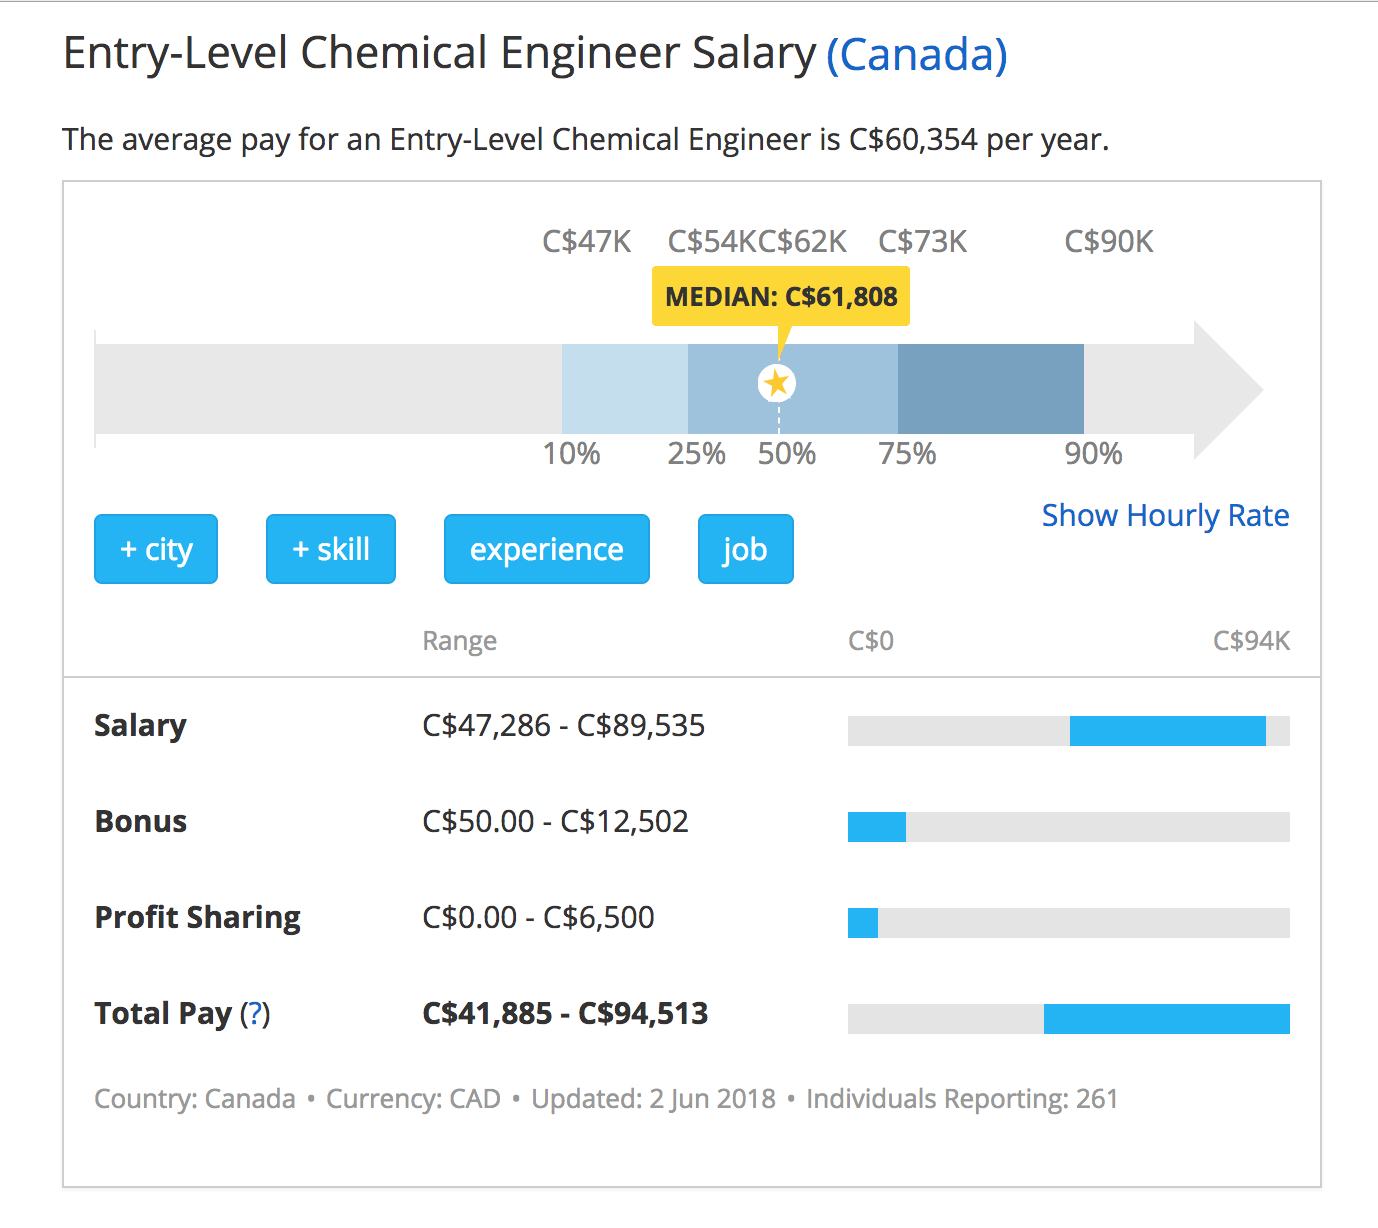 加拿大化学工程师年薪